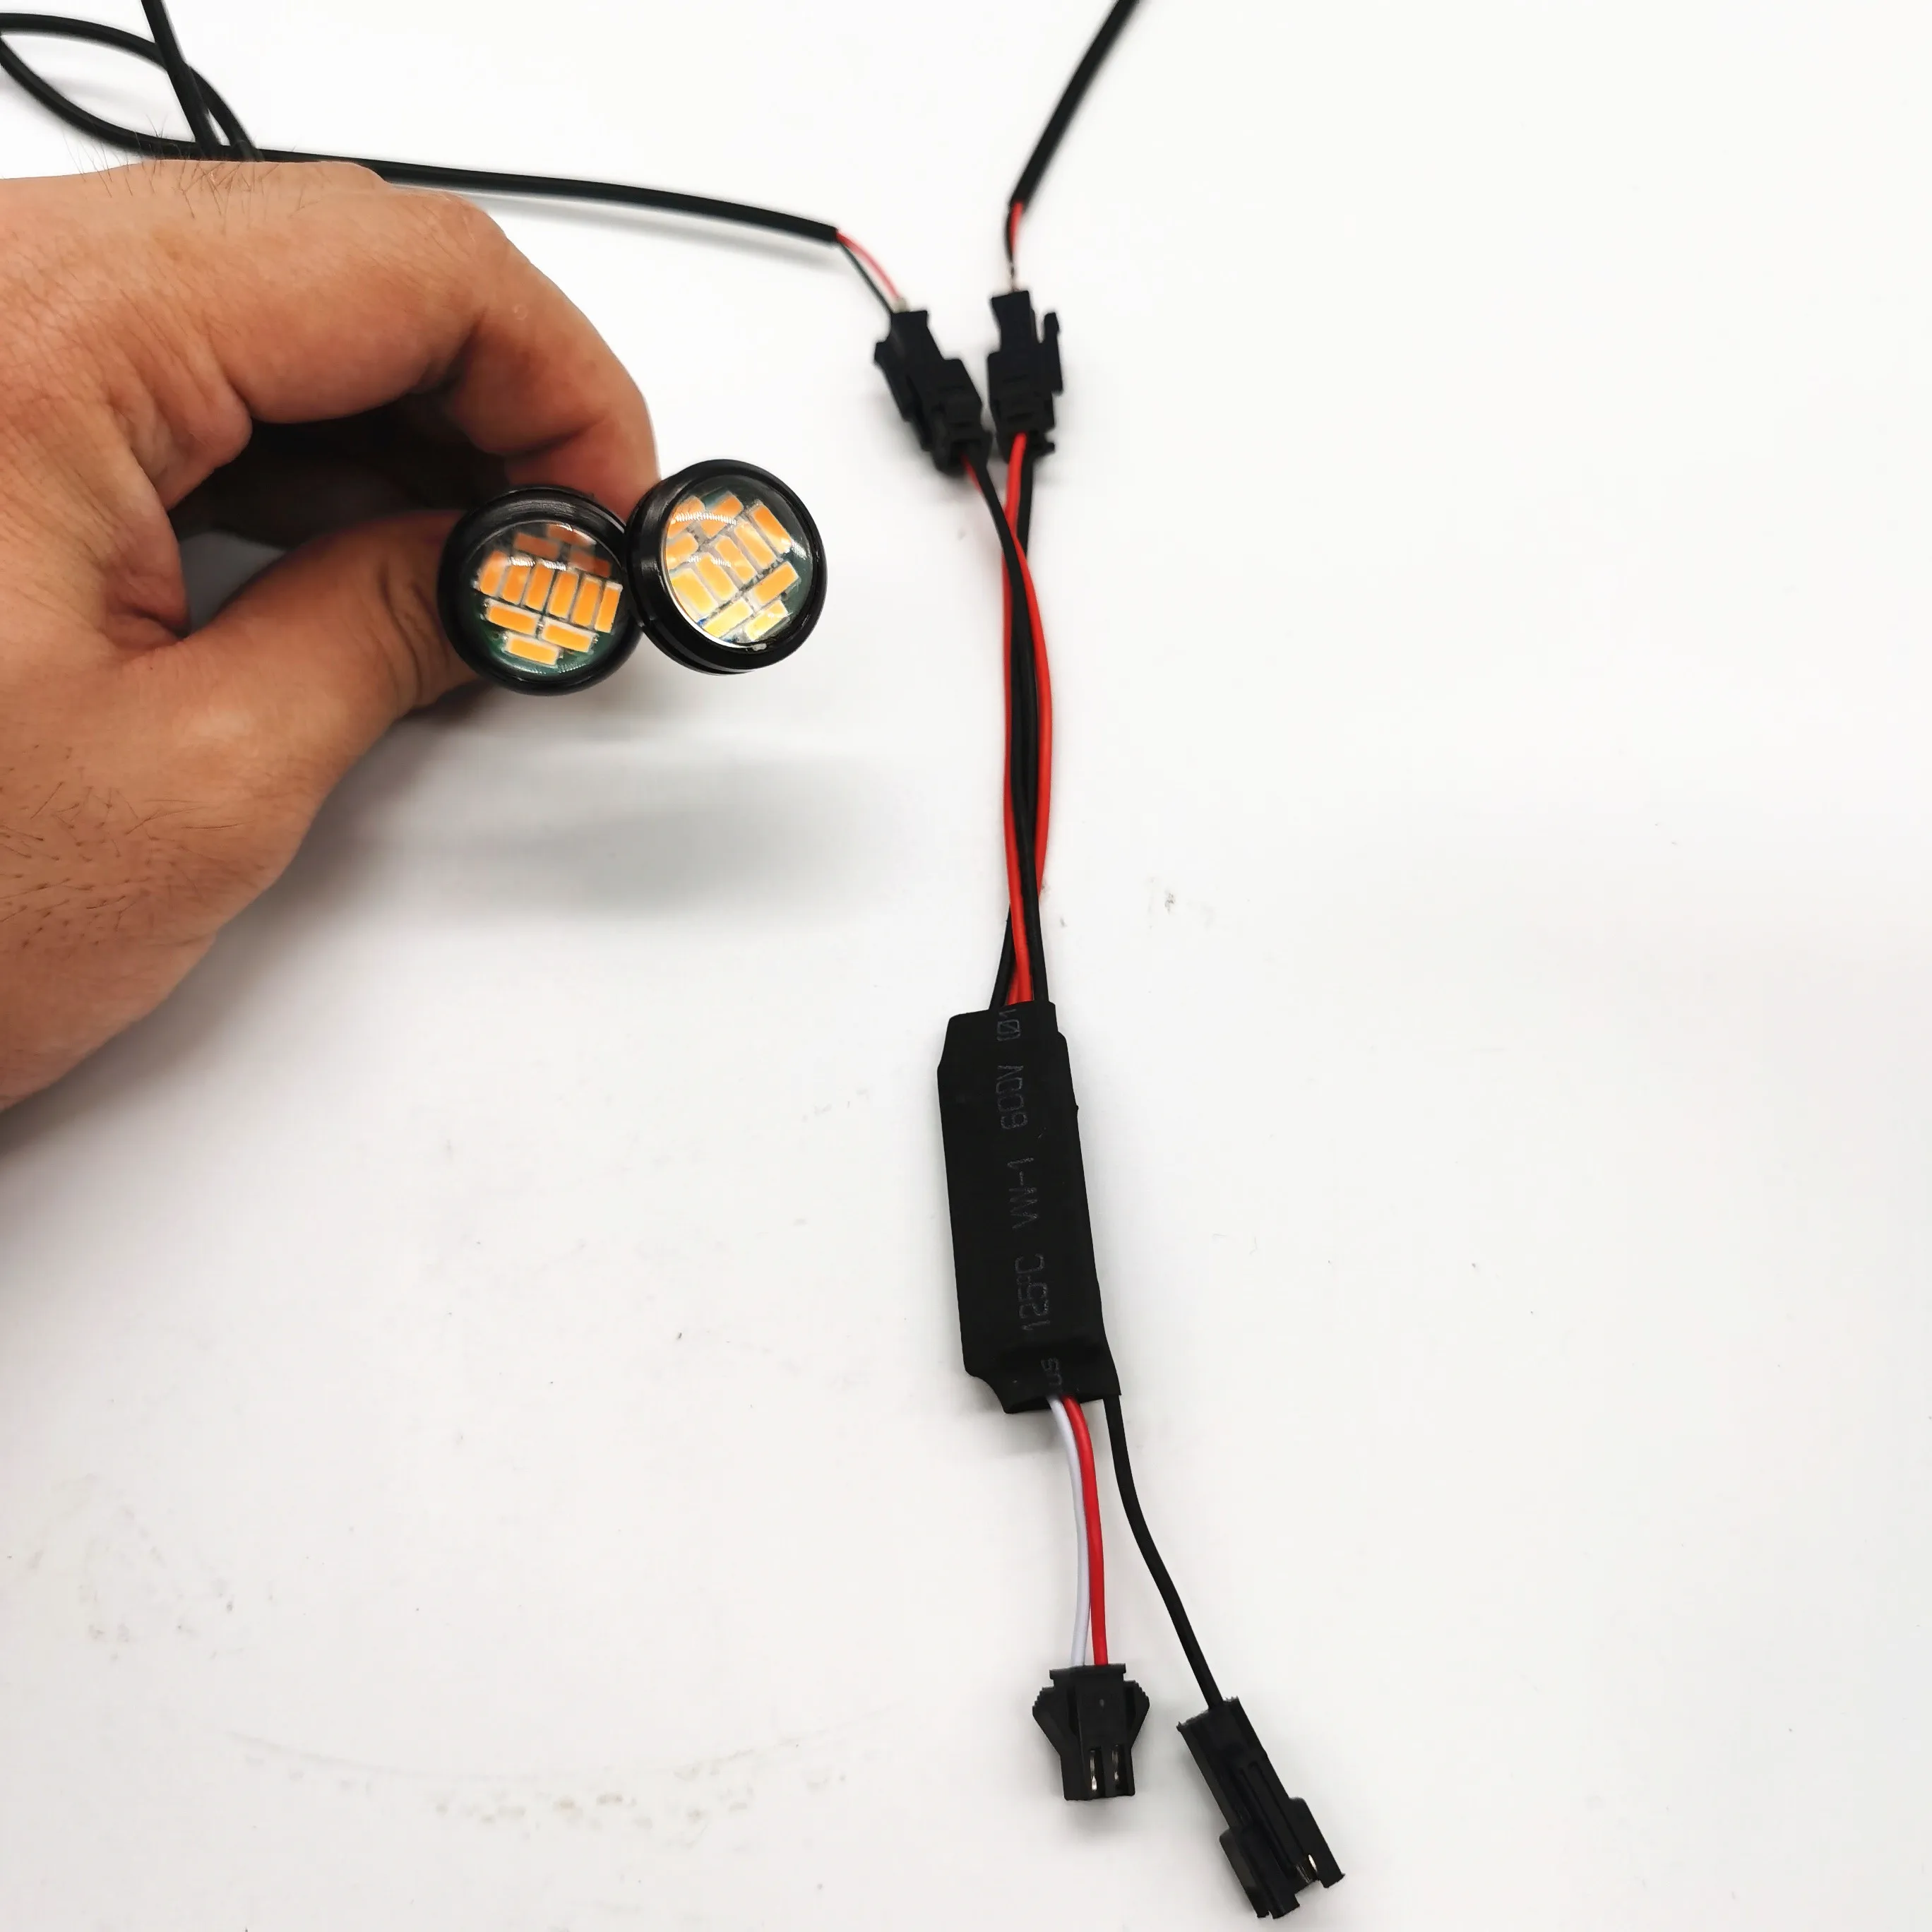 Stob ľahké ovládanie DUALTRON thunder elektrický skúter oranžové výstražné svetlo ovládanie